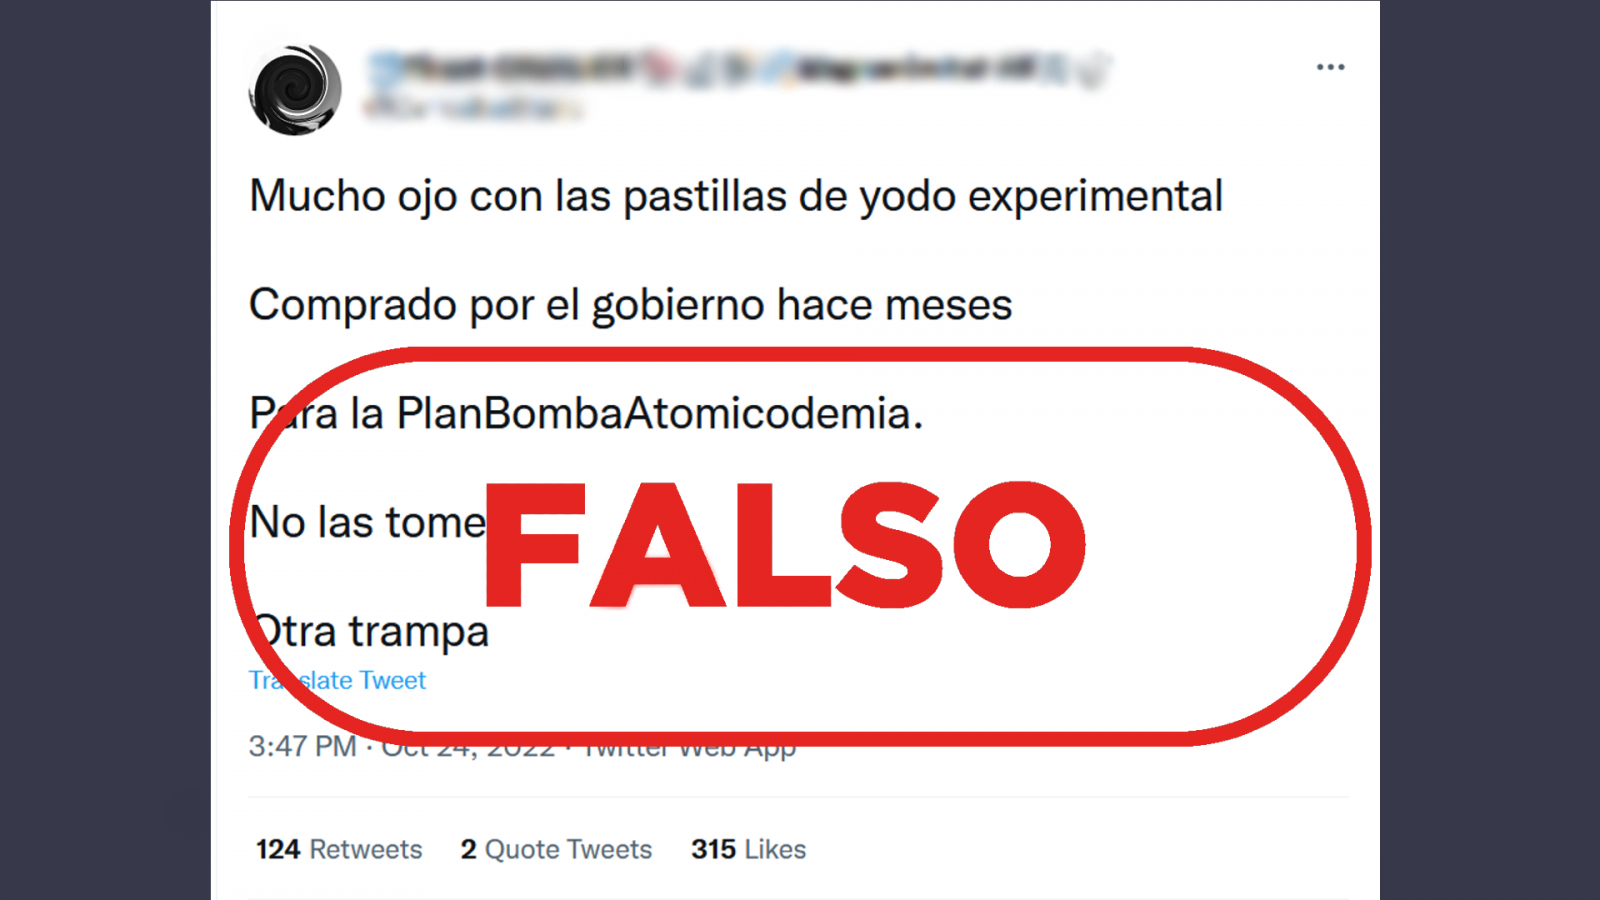 Circulan mensajes que desinforman sobre la compra de pastillas de yodo en España, pero desde el Ministerio del Interior aclaran que es una medida preventiva. Con el sello falso.